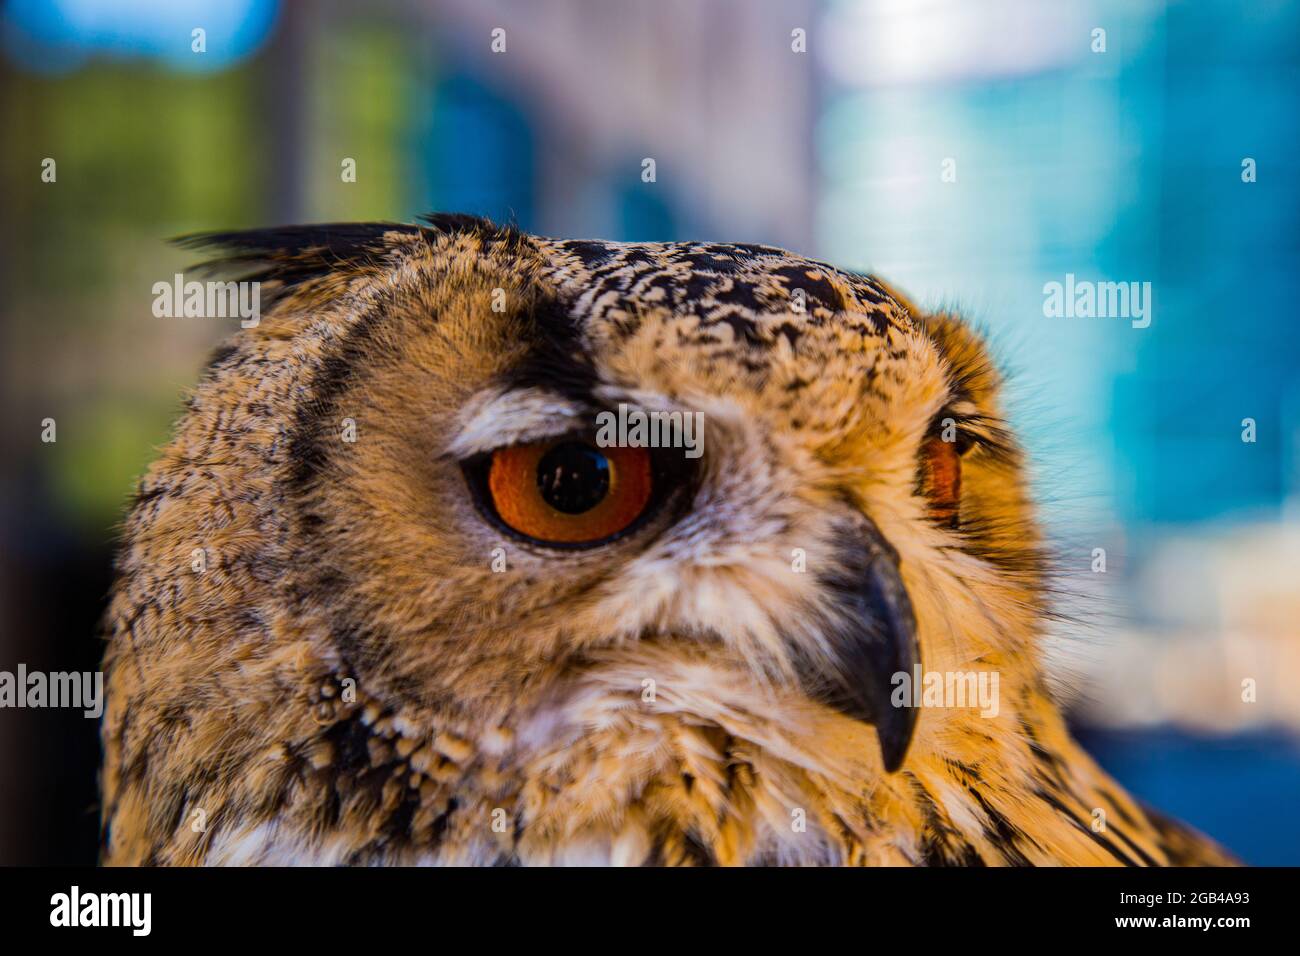 Falconry display owl, with orange eyes and orange plumage with black beak Stock Photo